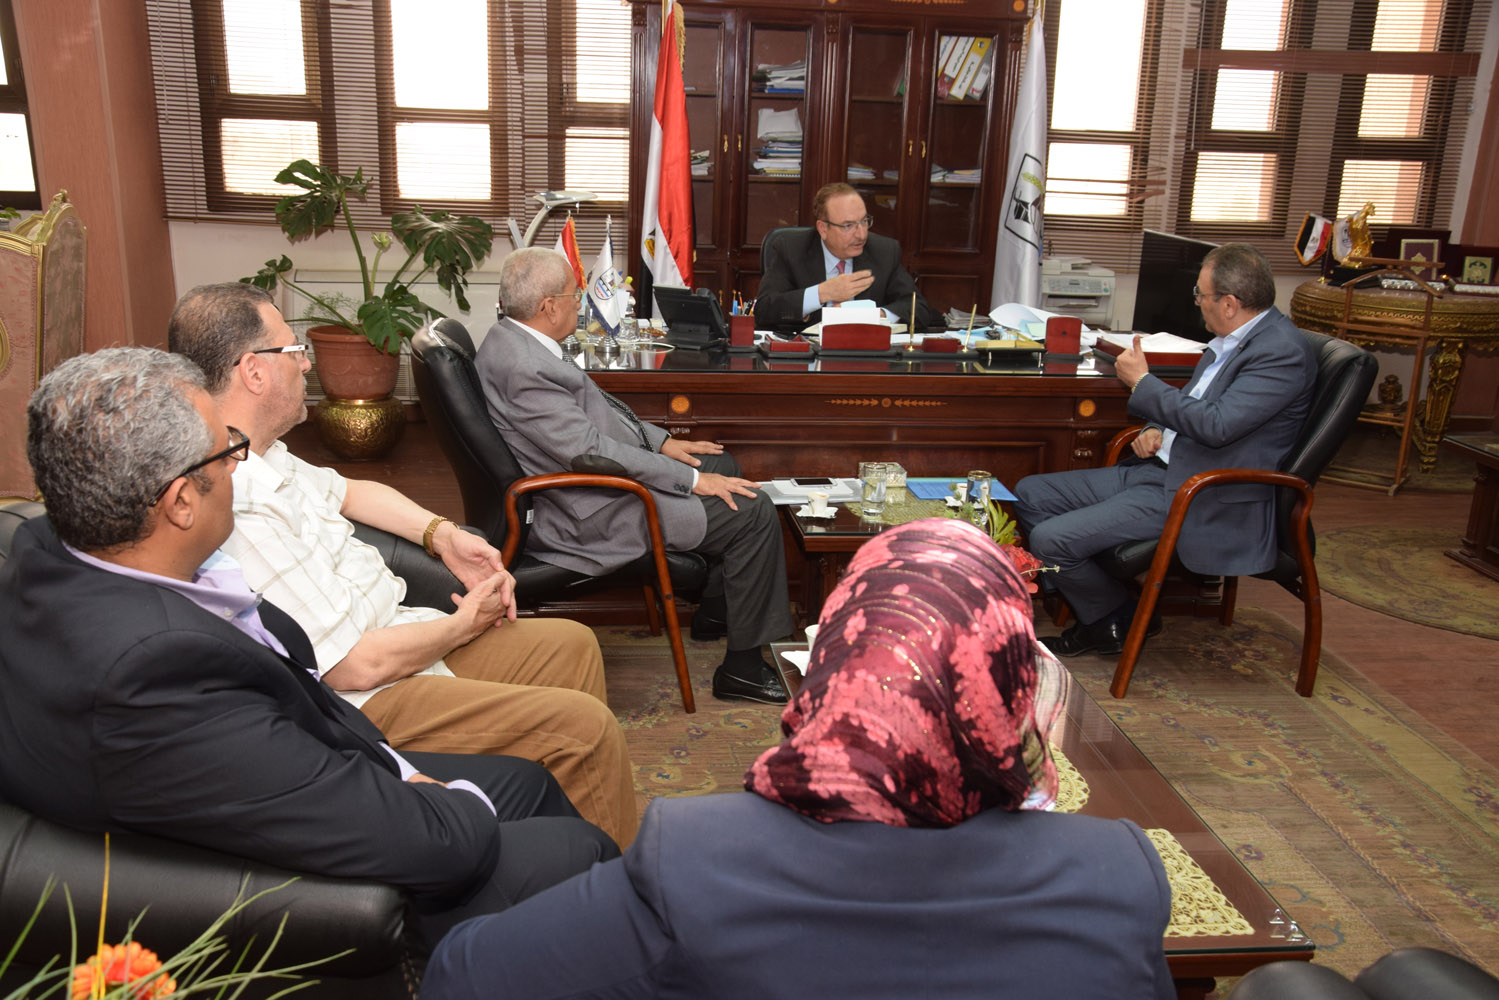   محافظ بني سويف يبحث مع اتحاد الصناعات المصرية تنفيذ مبادرة «شغلك في قريتك»